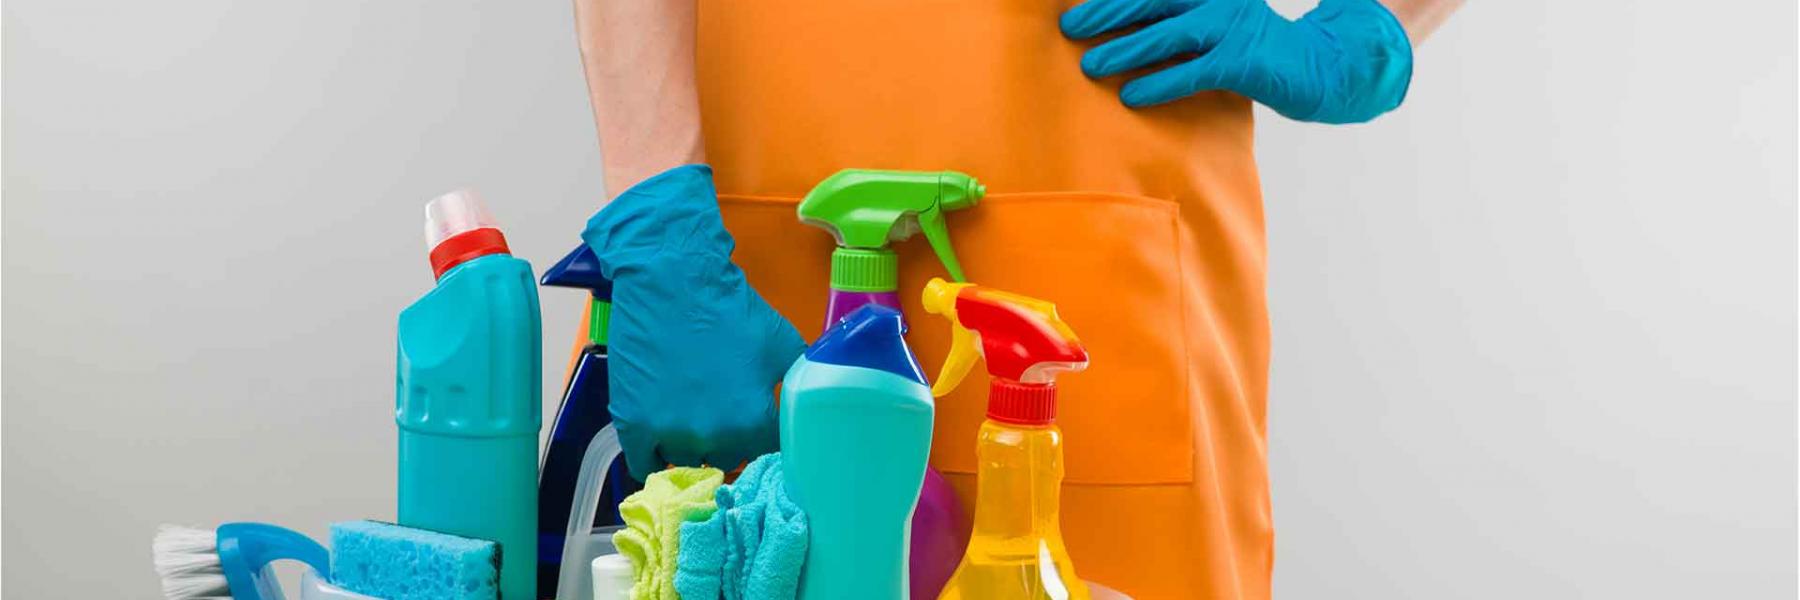 كيف تنظفين منزلك بطريقة تحميكي من "كورونا"؟